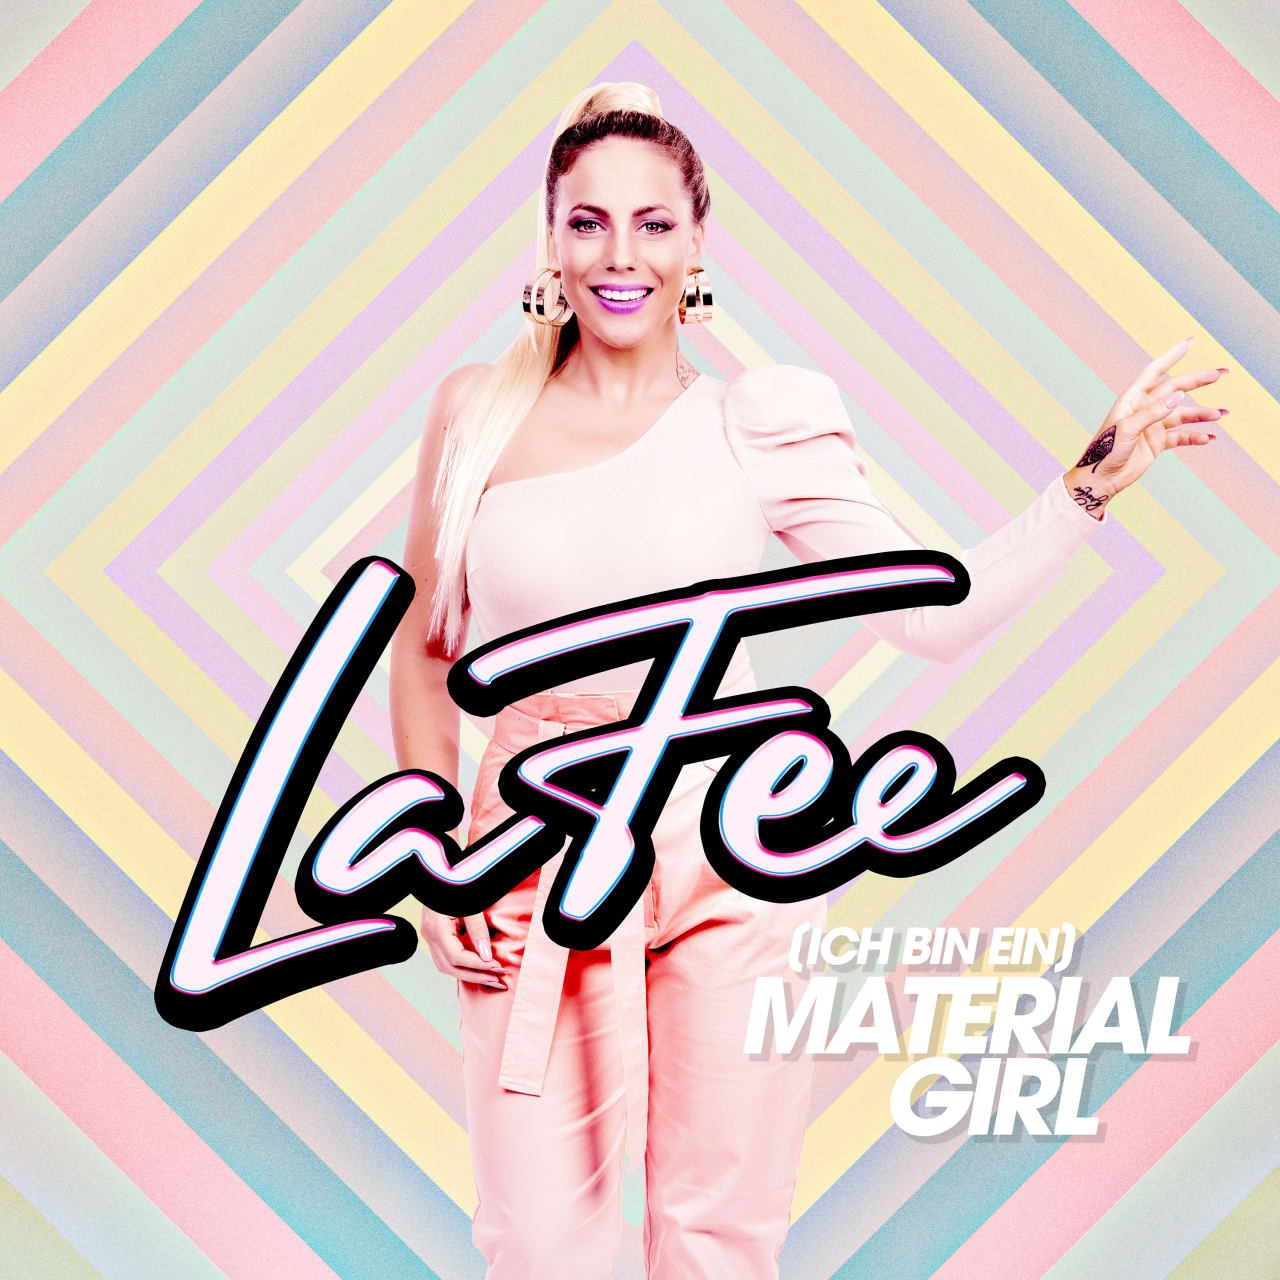 LaFee - (Ich bin ein) Material Girl (2021) 